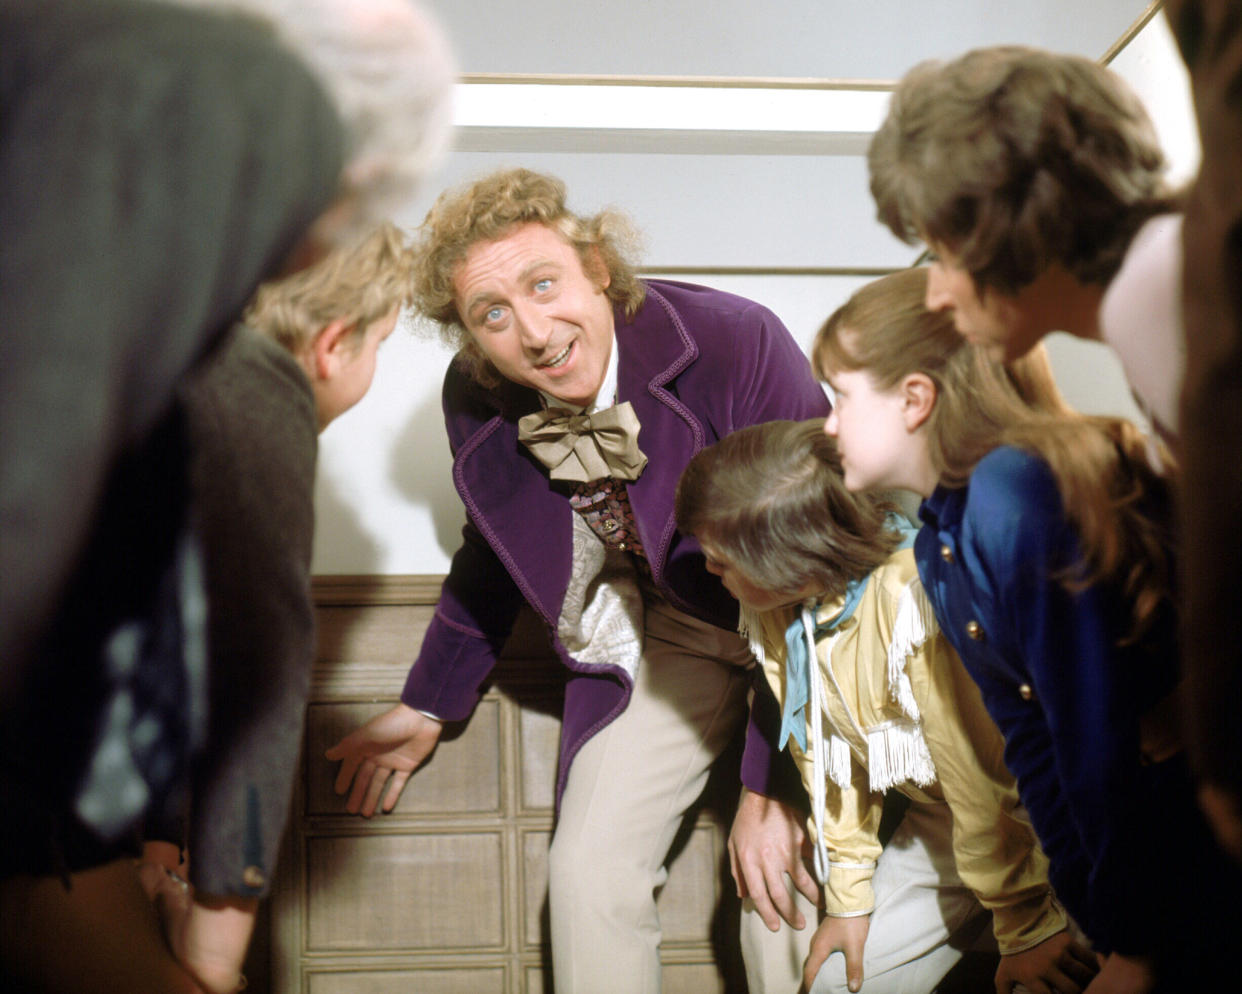 'Willy Wonka y la fábrica de chocolate' de 1971 vuelve al recuerdo cinéfilo a raíz del estreno de la precuela con Timothée Chalamet. (Foto de Silver Screen Collection/Getty Images)